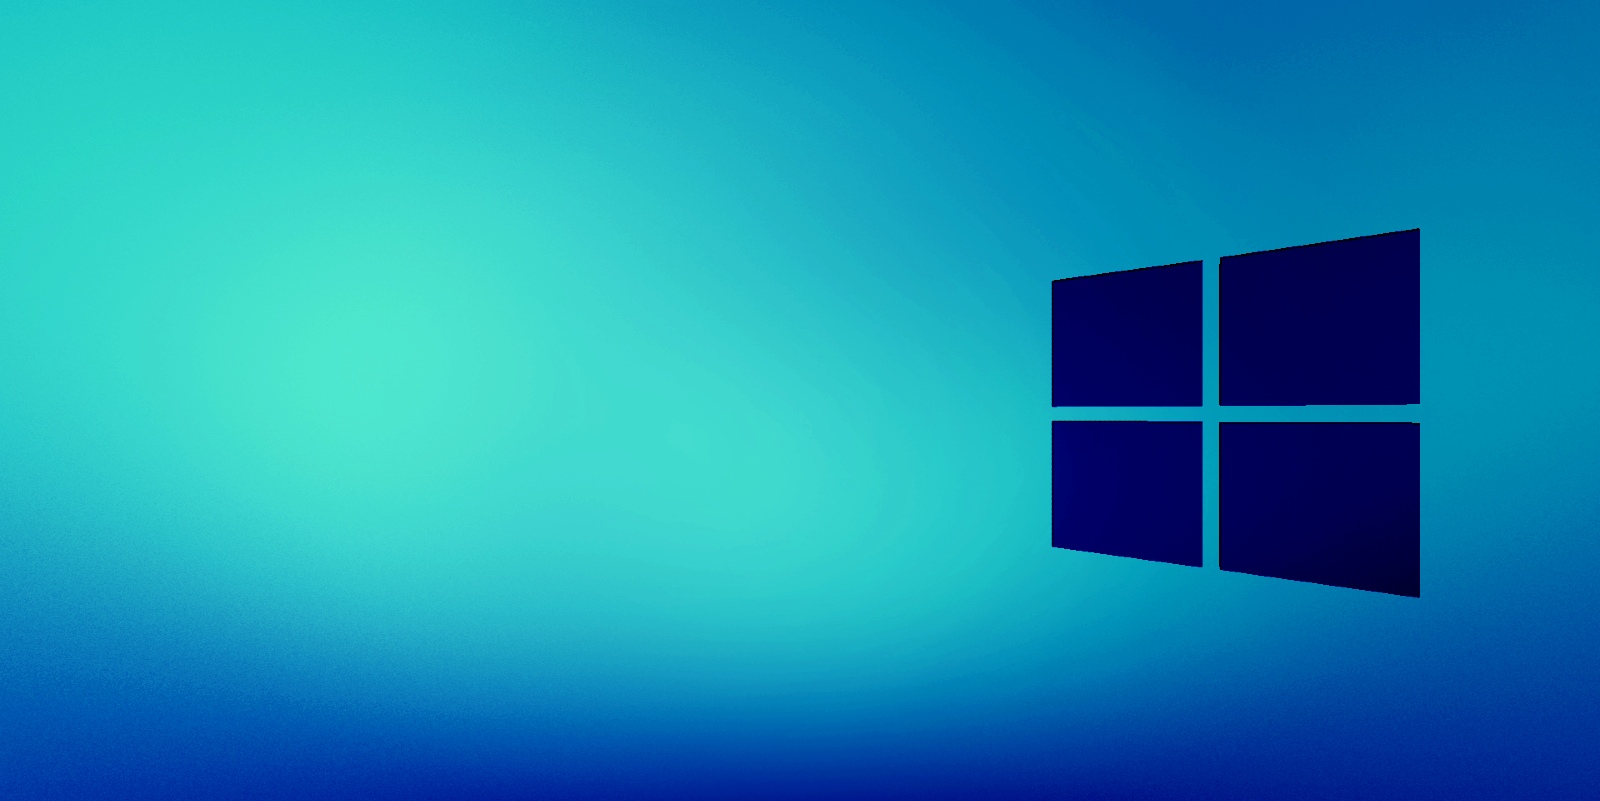 Sono stati rilasciati aggiornamenti di emergenza di Windows 10 per correggere gli arresti anomali della stampa blu